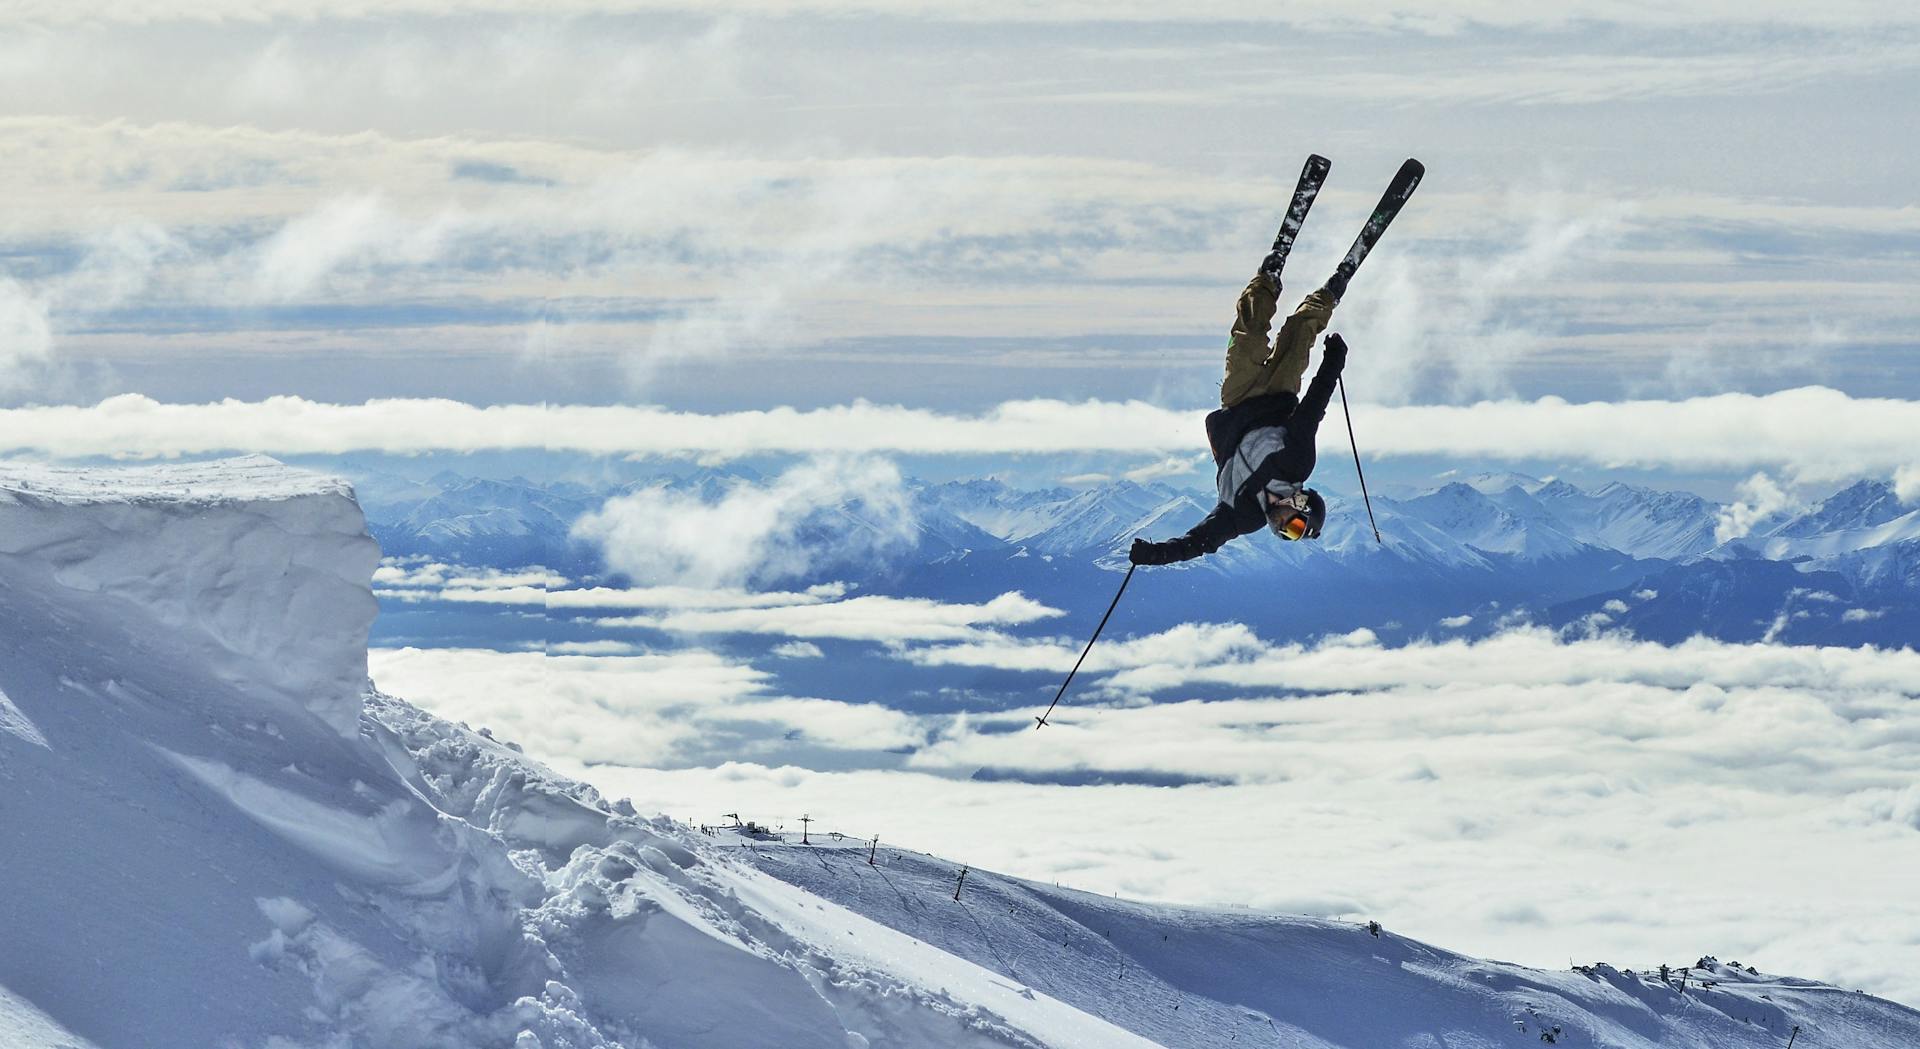 Flauchauwinkl skier doing a backflip